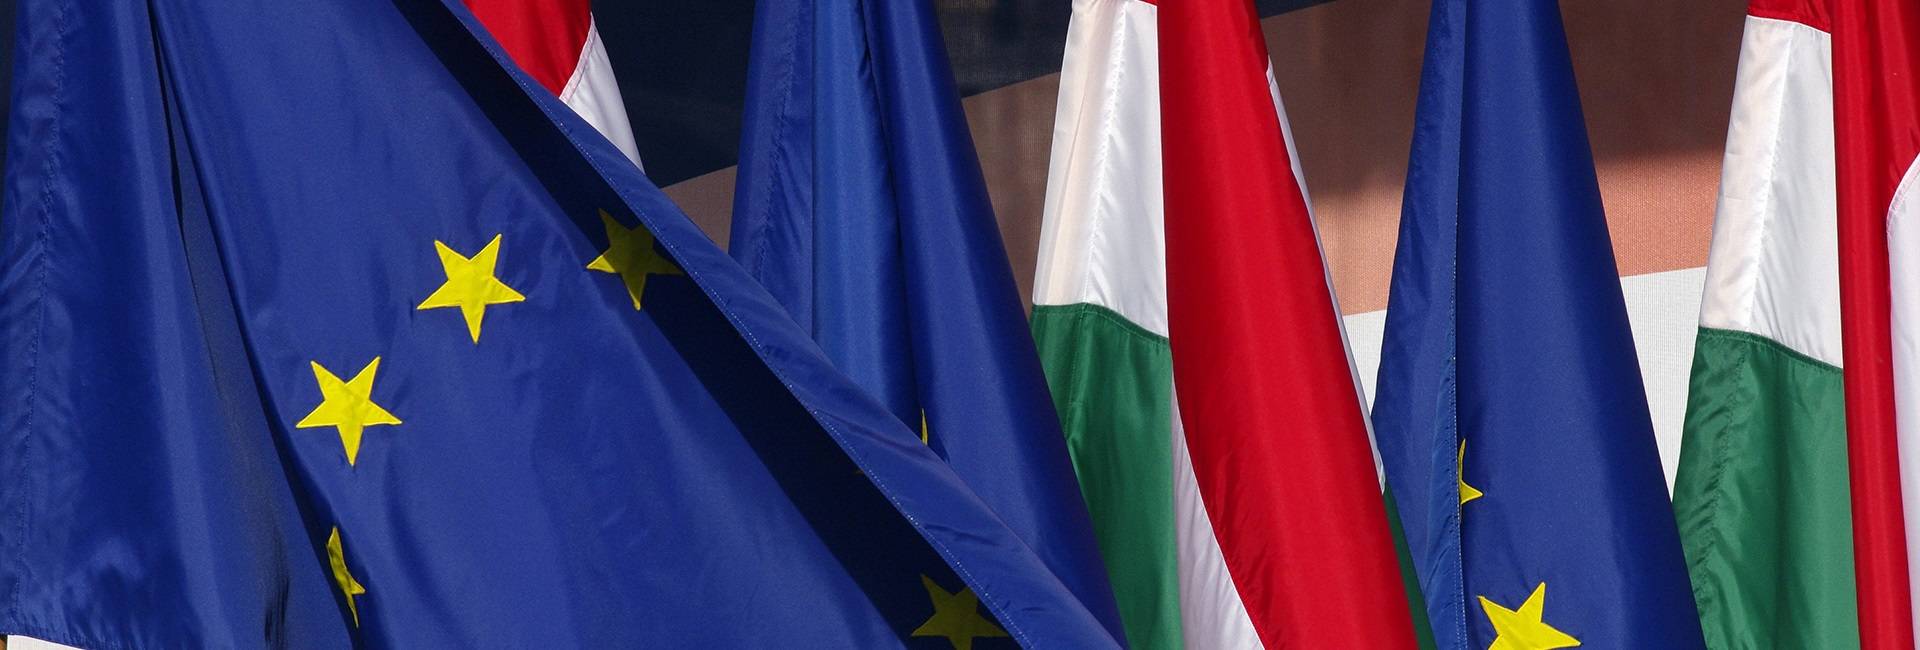 Мнение: «ЕС вынужден будет искать компромисс с Венгрией», – Роман Травин